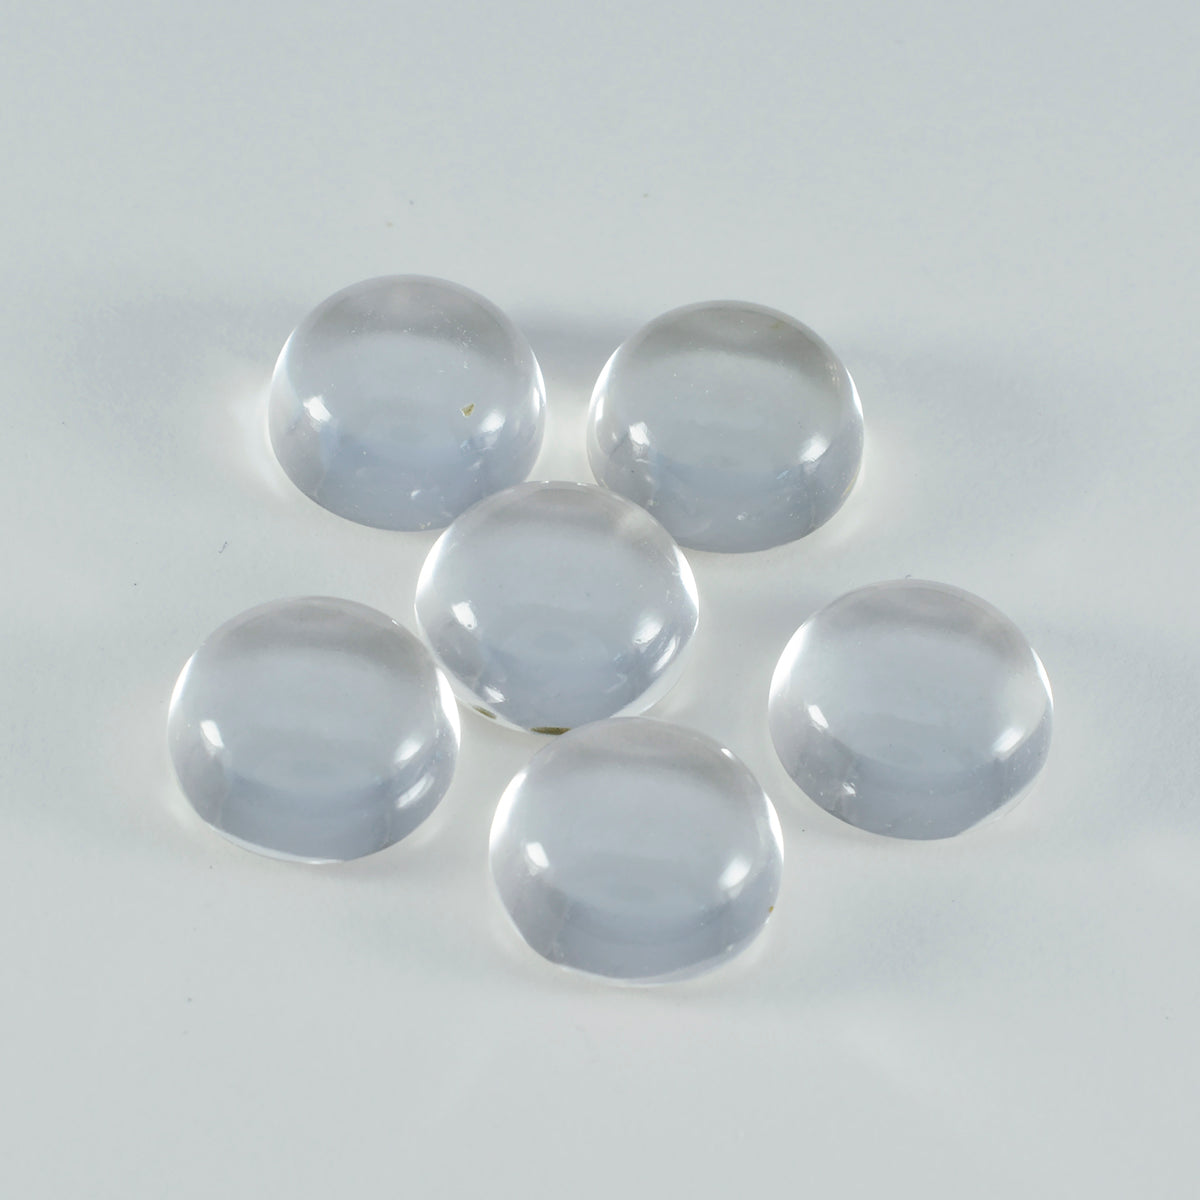 riyogems 1 шт., кабошон из белого кристалла кварца, 10x10 мм, круглая форма, драгоценный камень хорошего качества